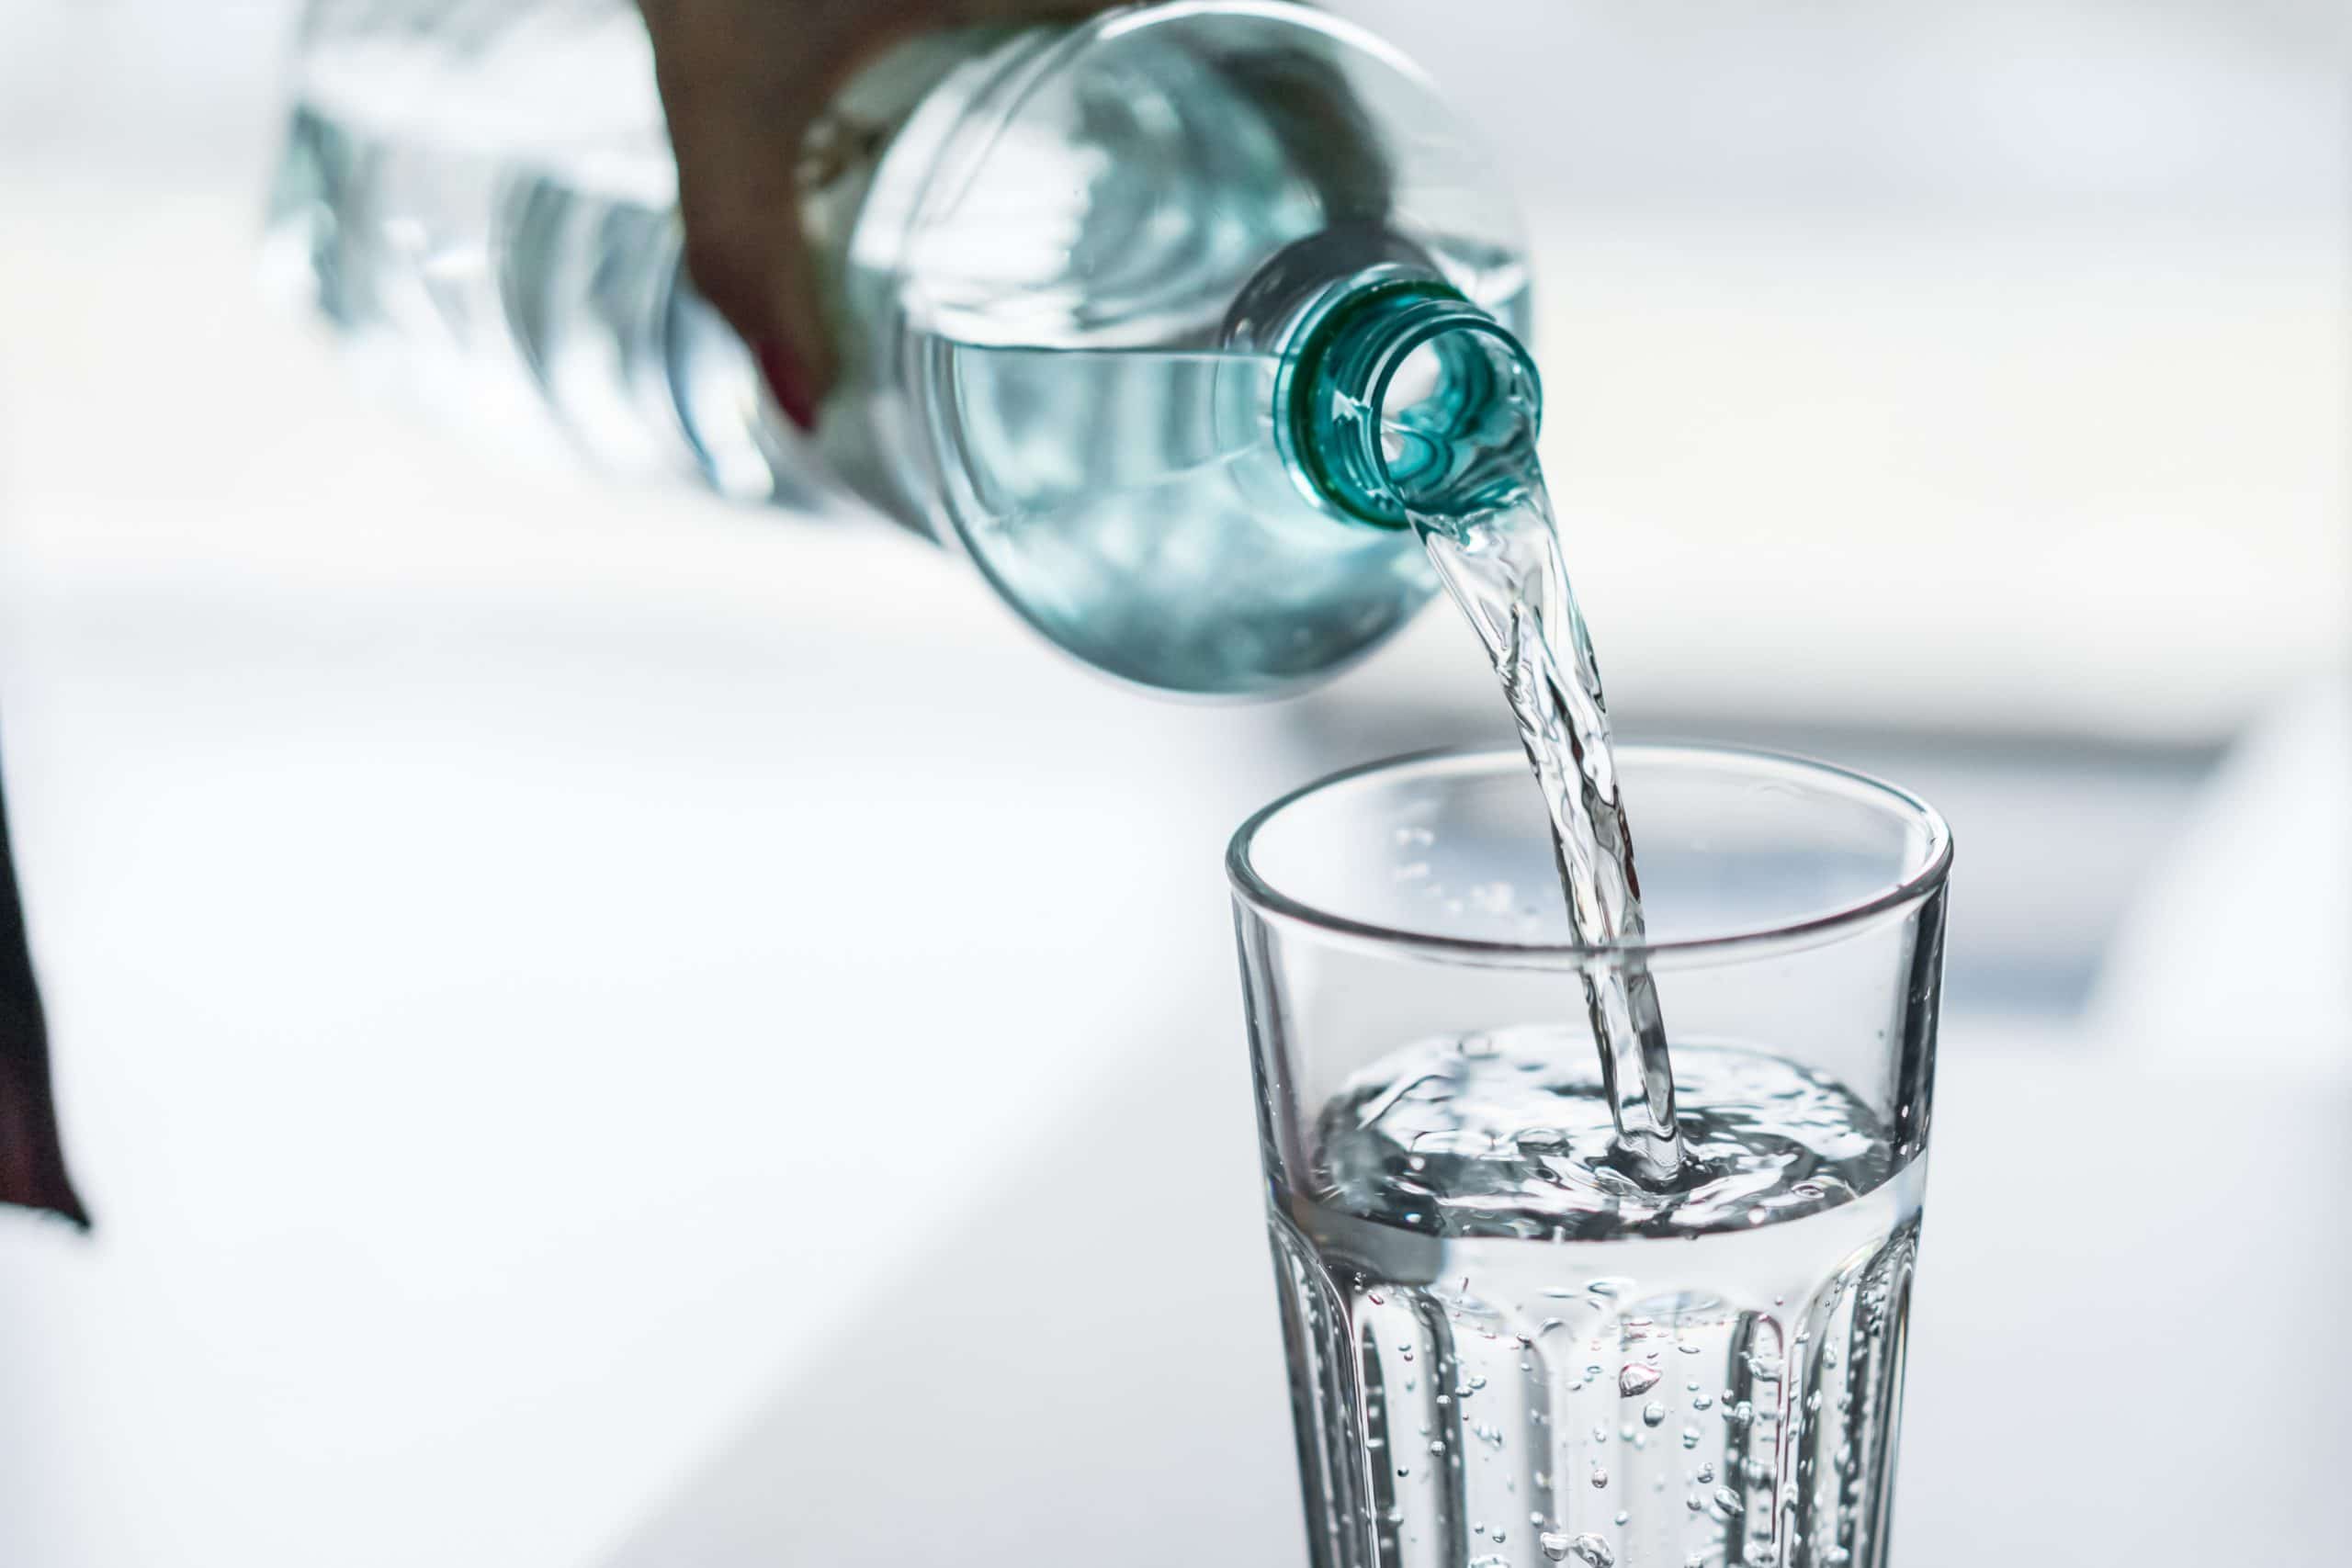 Nước lọc tinh khiết giúp bạn cắt giảm calo dư thừa hiệu quả